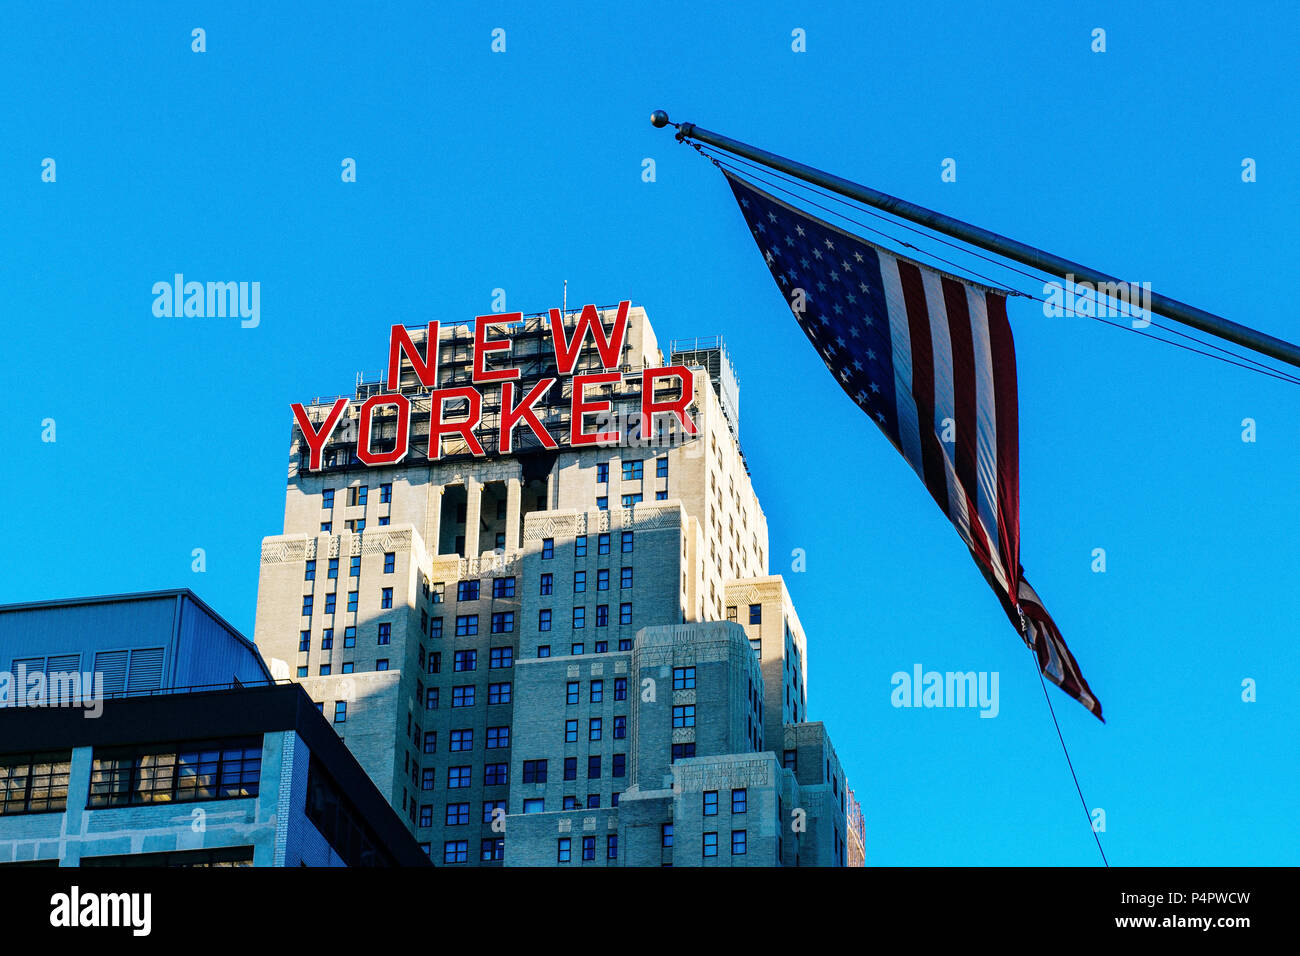 Novembre 2013 hiver New Yorker signe à Manhattan Midtown hôtel avec drapeau, New York, United States Banque D'Images